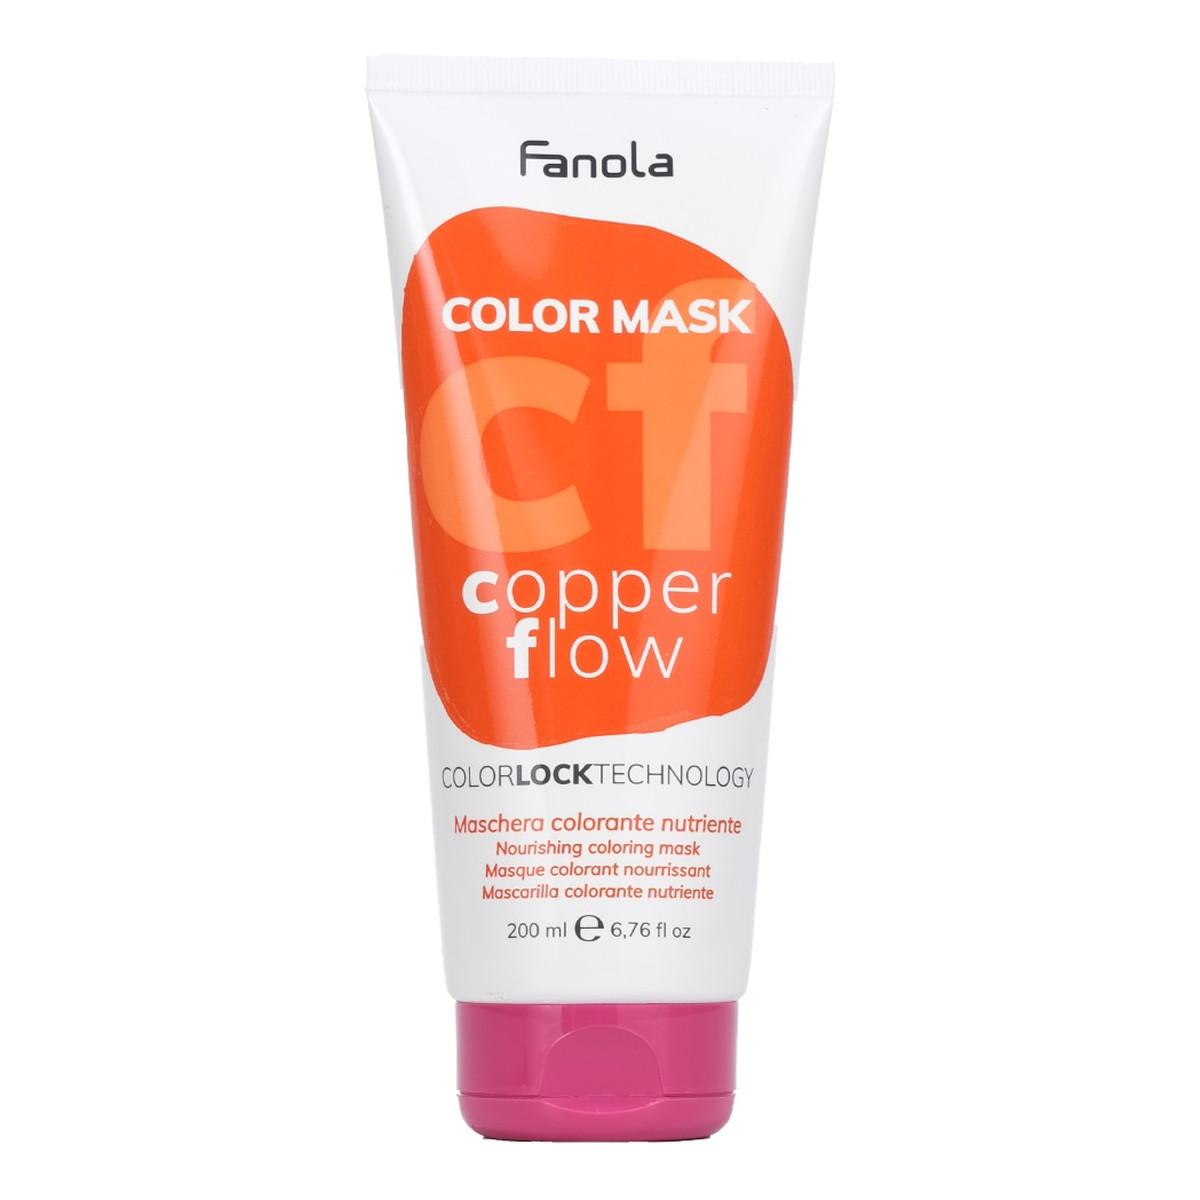 Fanola Color mask maska koloryzująca do włosów copper flow 200ml